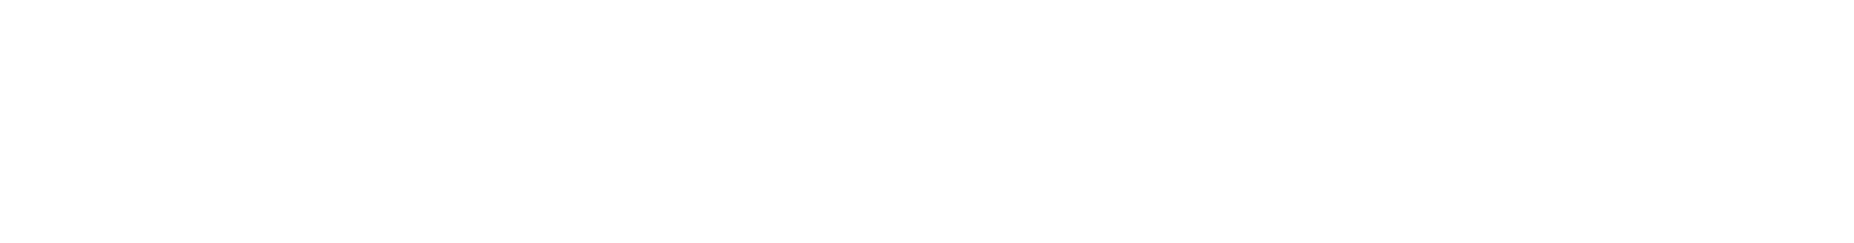 STL Tones logo